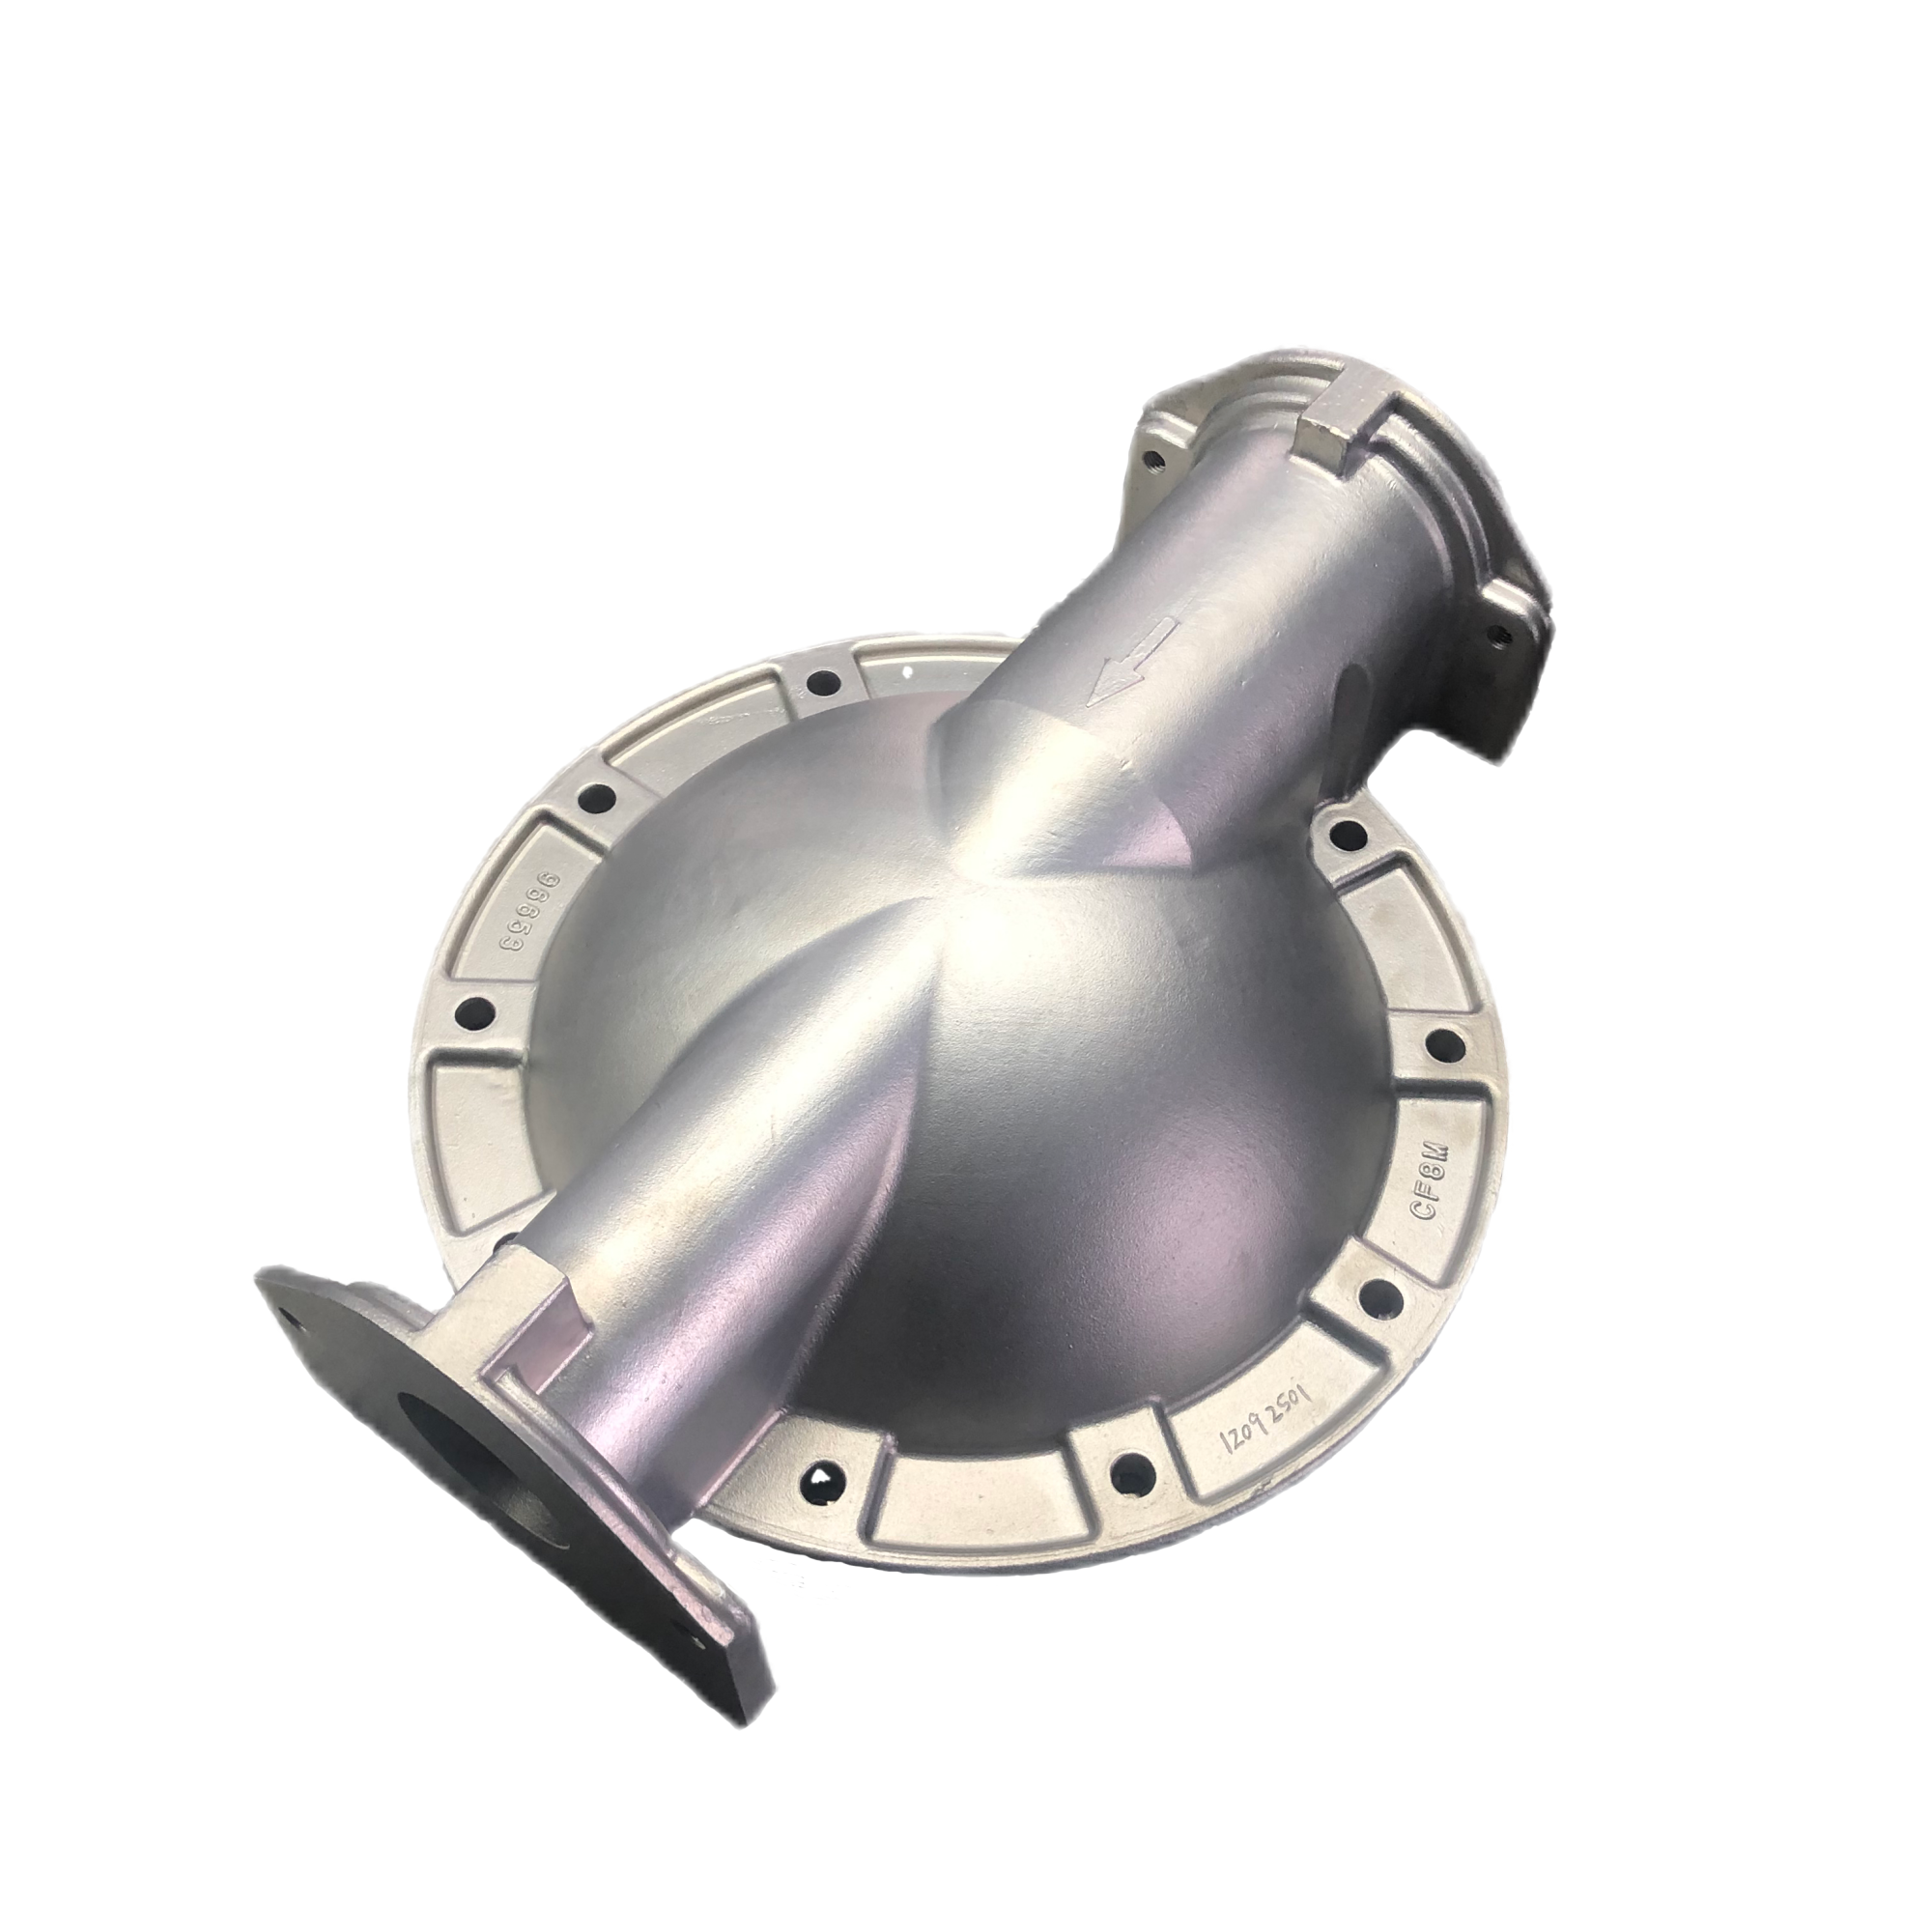 Piezas de fundición de bomba grande de diafragma neumático de acero inoxidable de fundición OEM